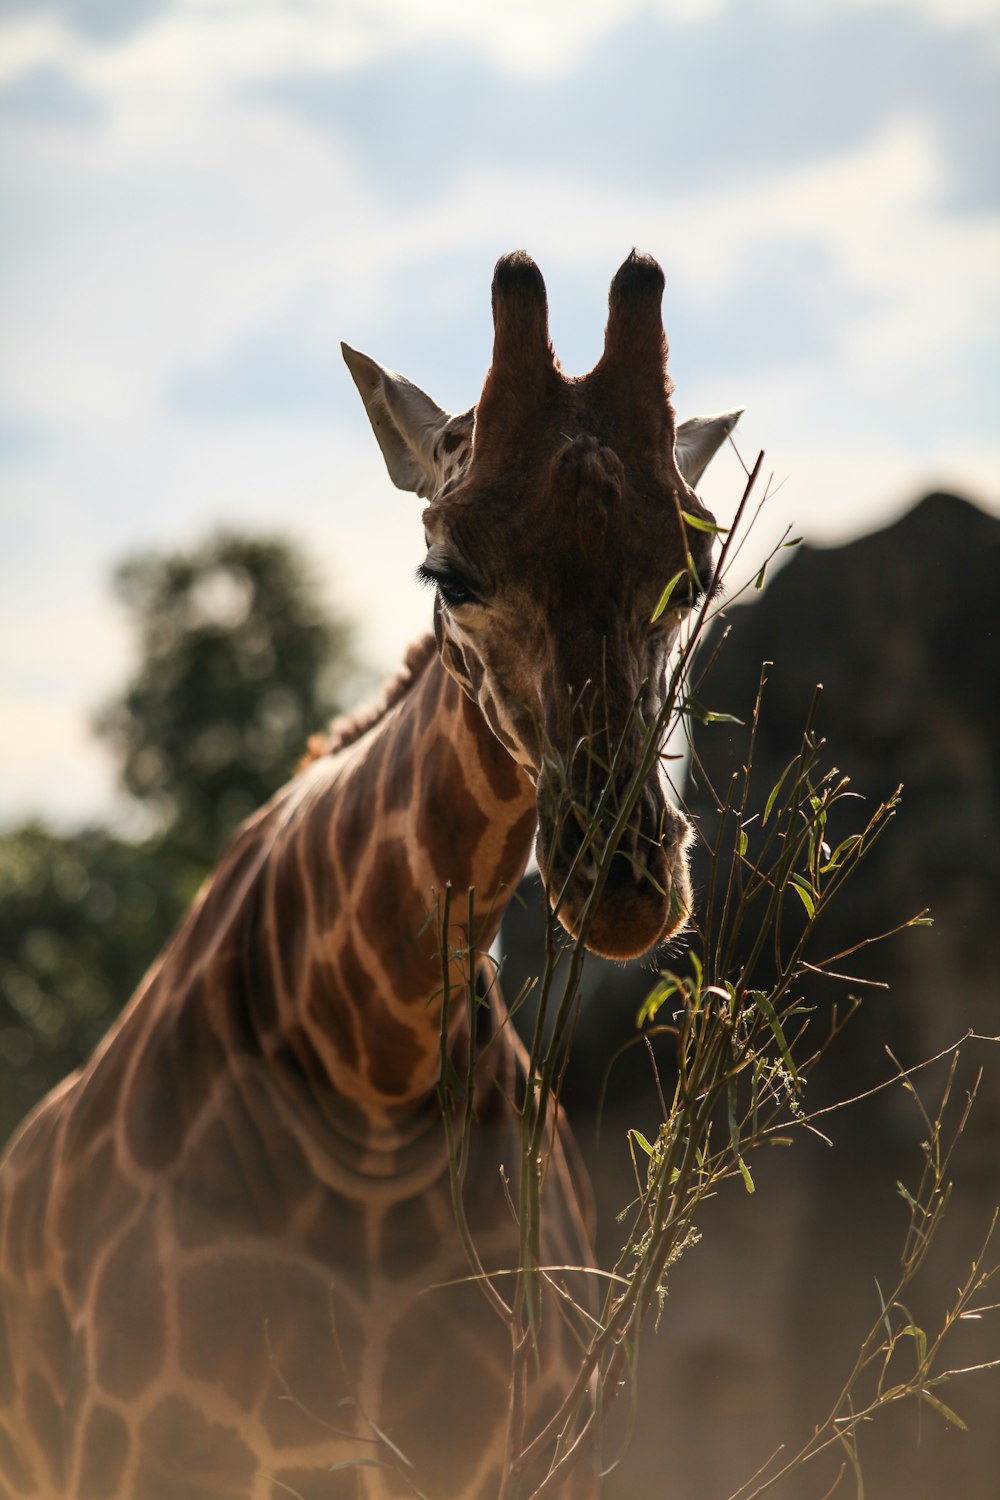 brown giraffe eating grass during daytime